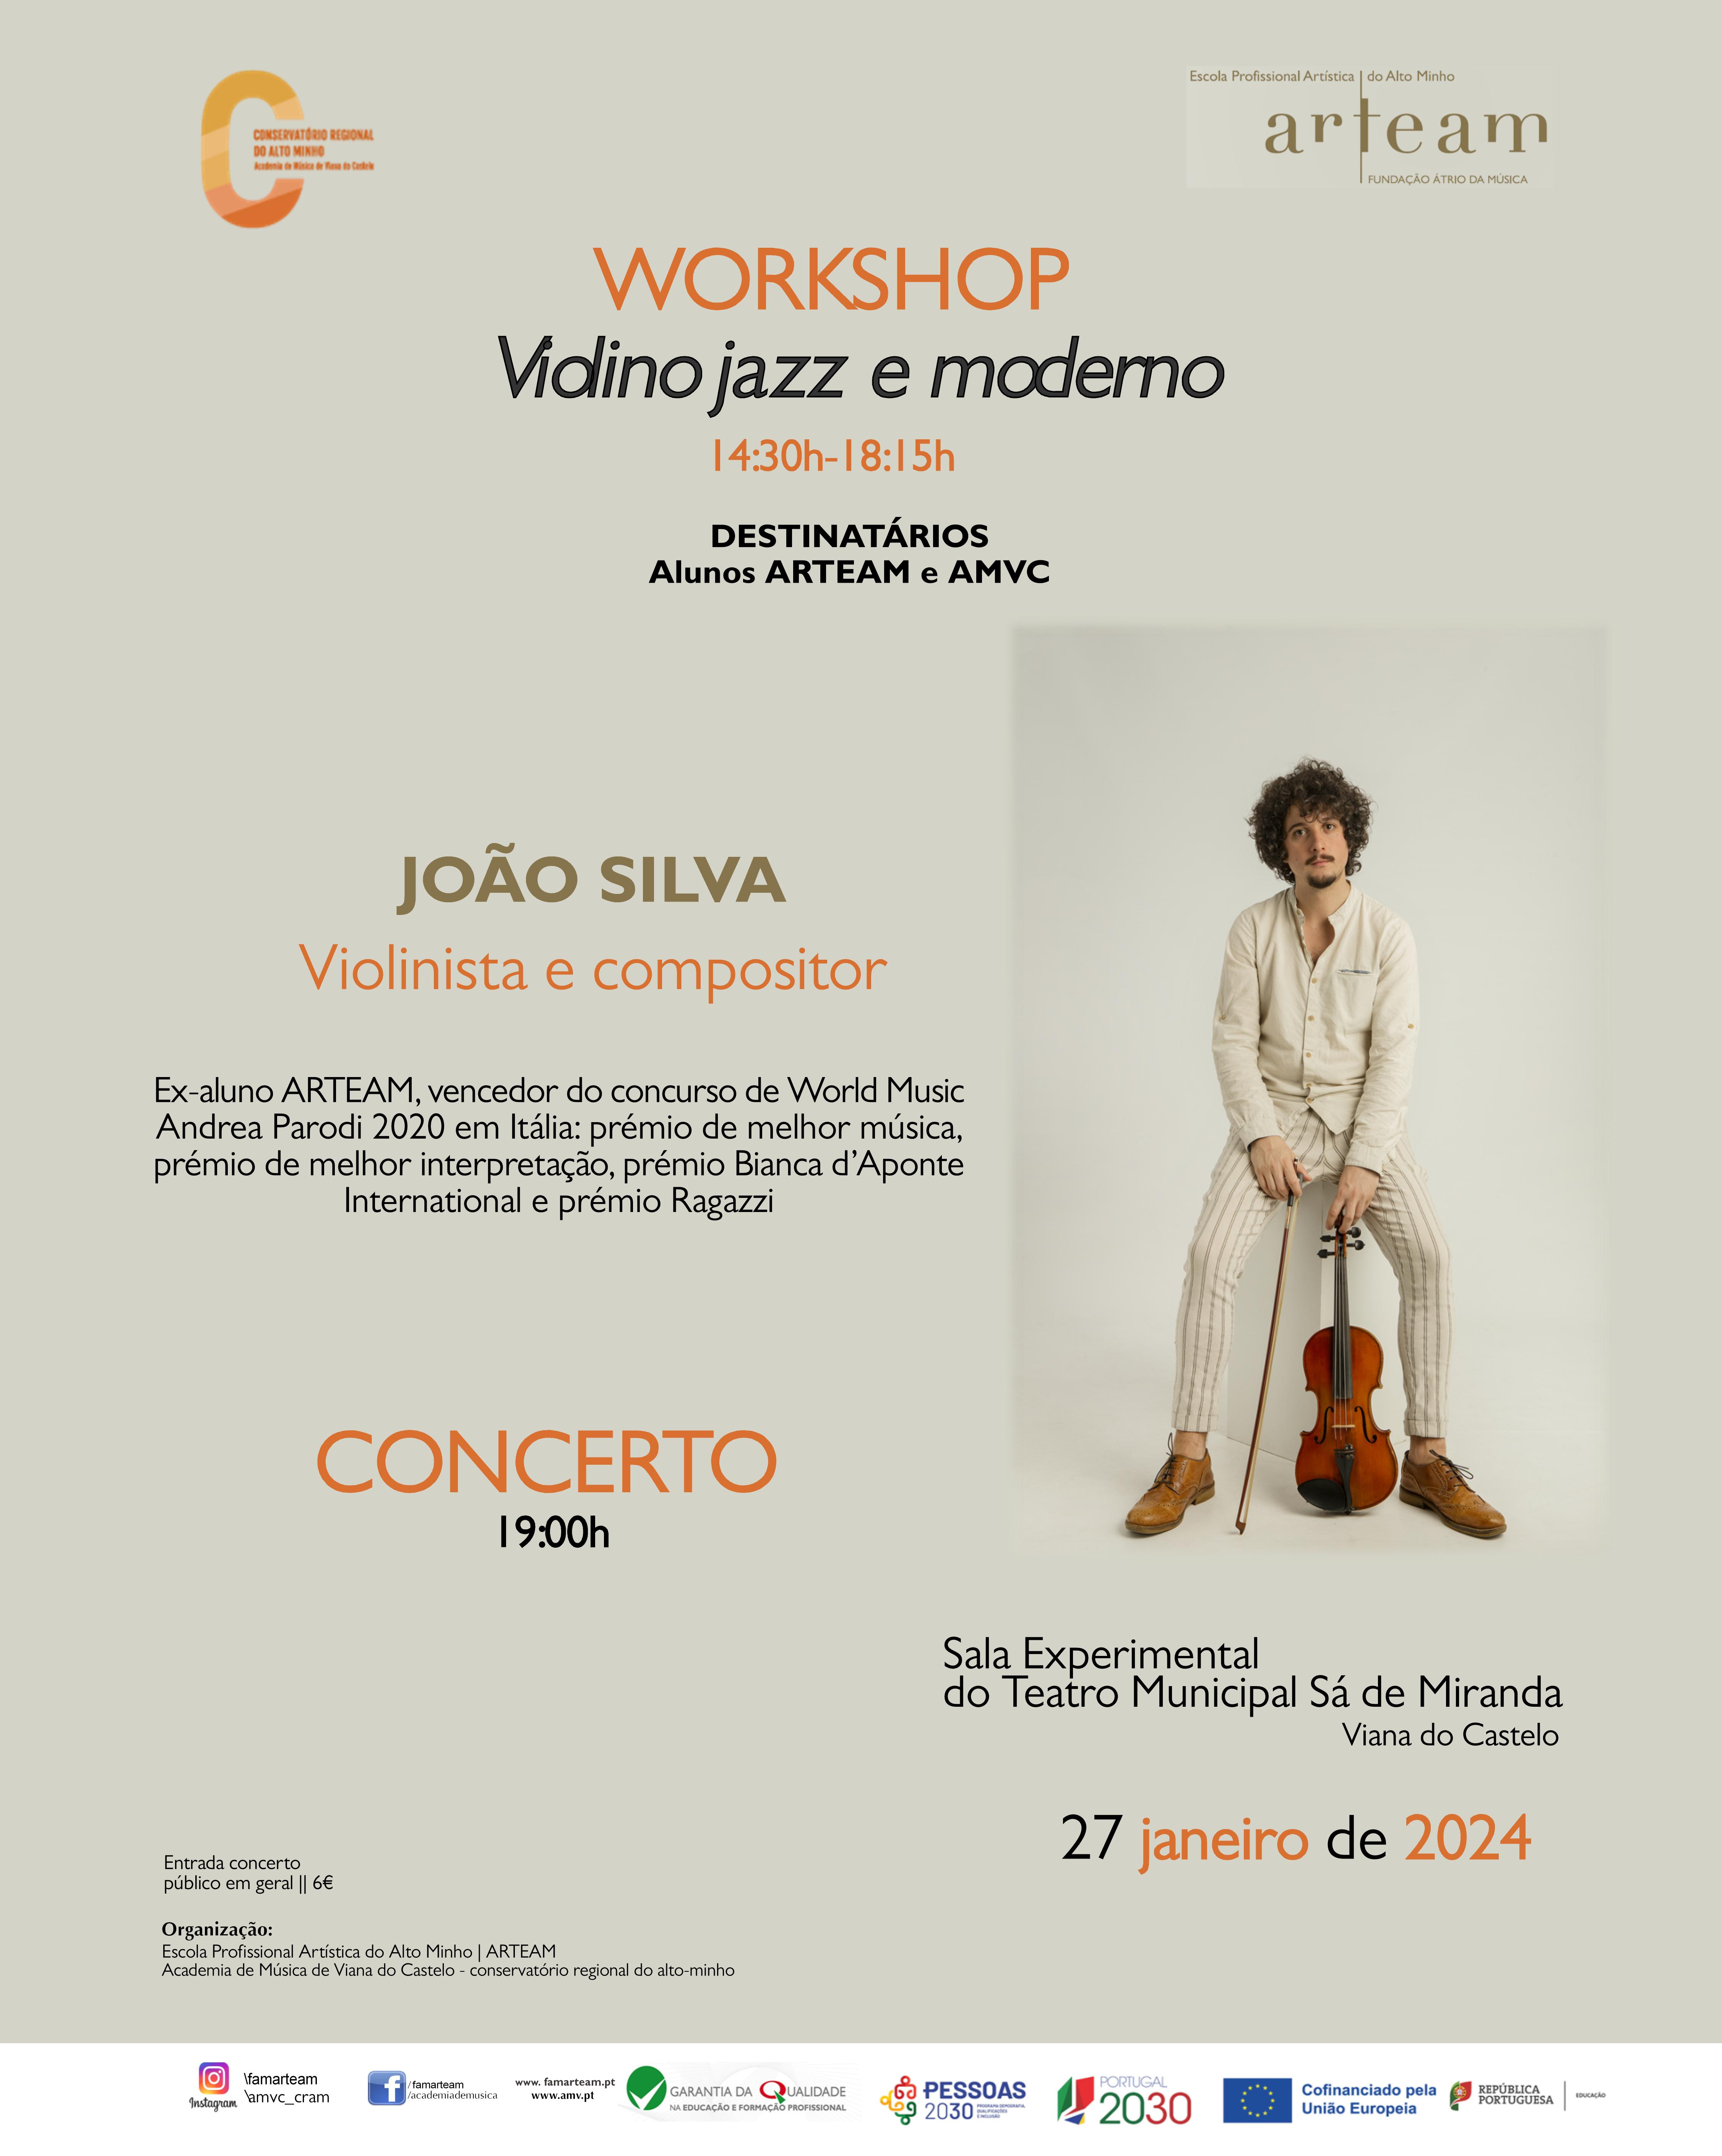 Violinista e compositor João Silva atua em Viana do Castelo